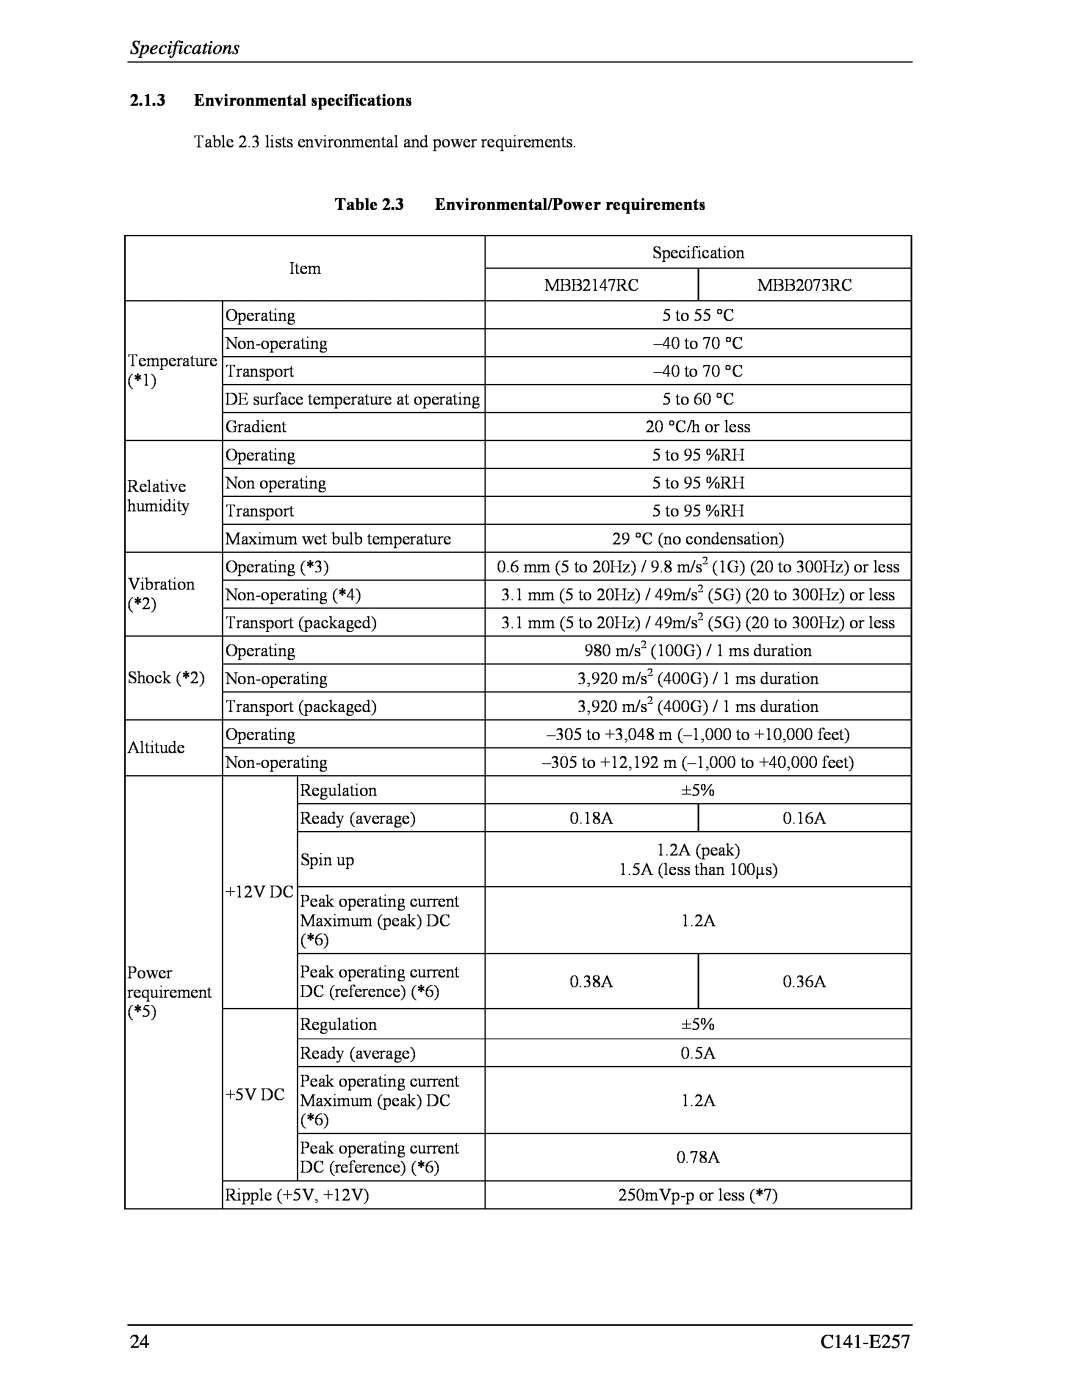 Fujitsu MBB2147RC, MBB2073RC Specifications, C141-E257, Environmental specifications, Environmental/Power requirements 